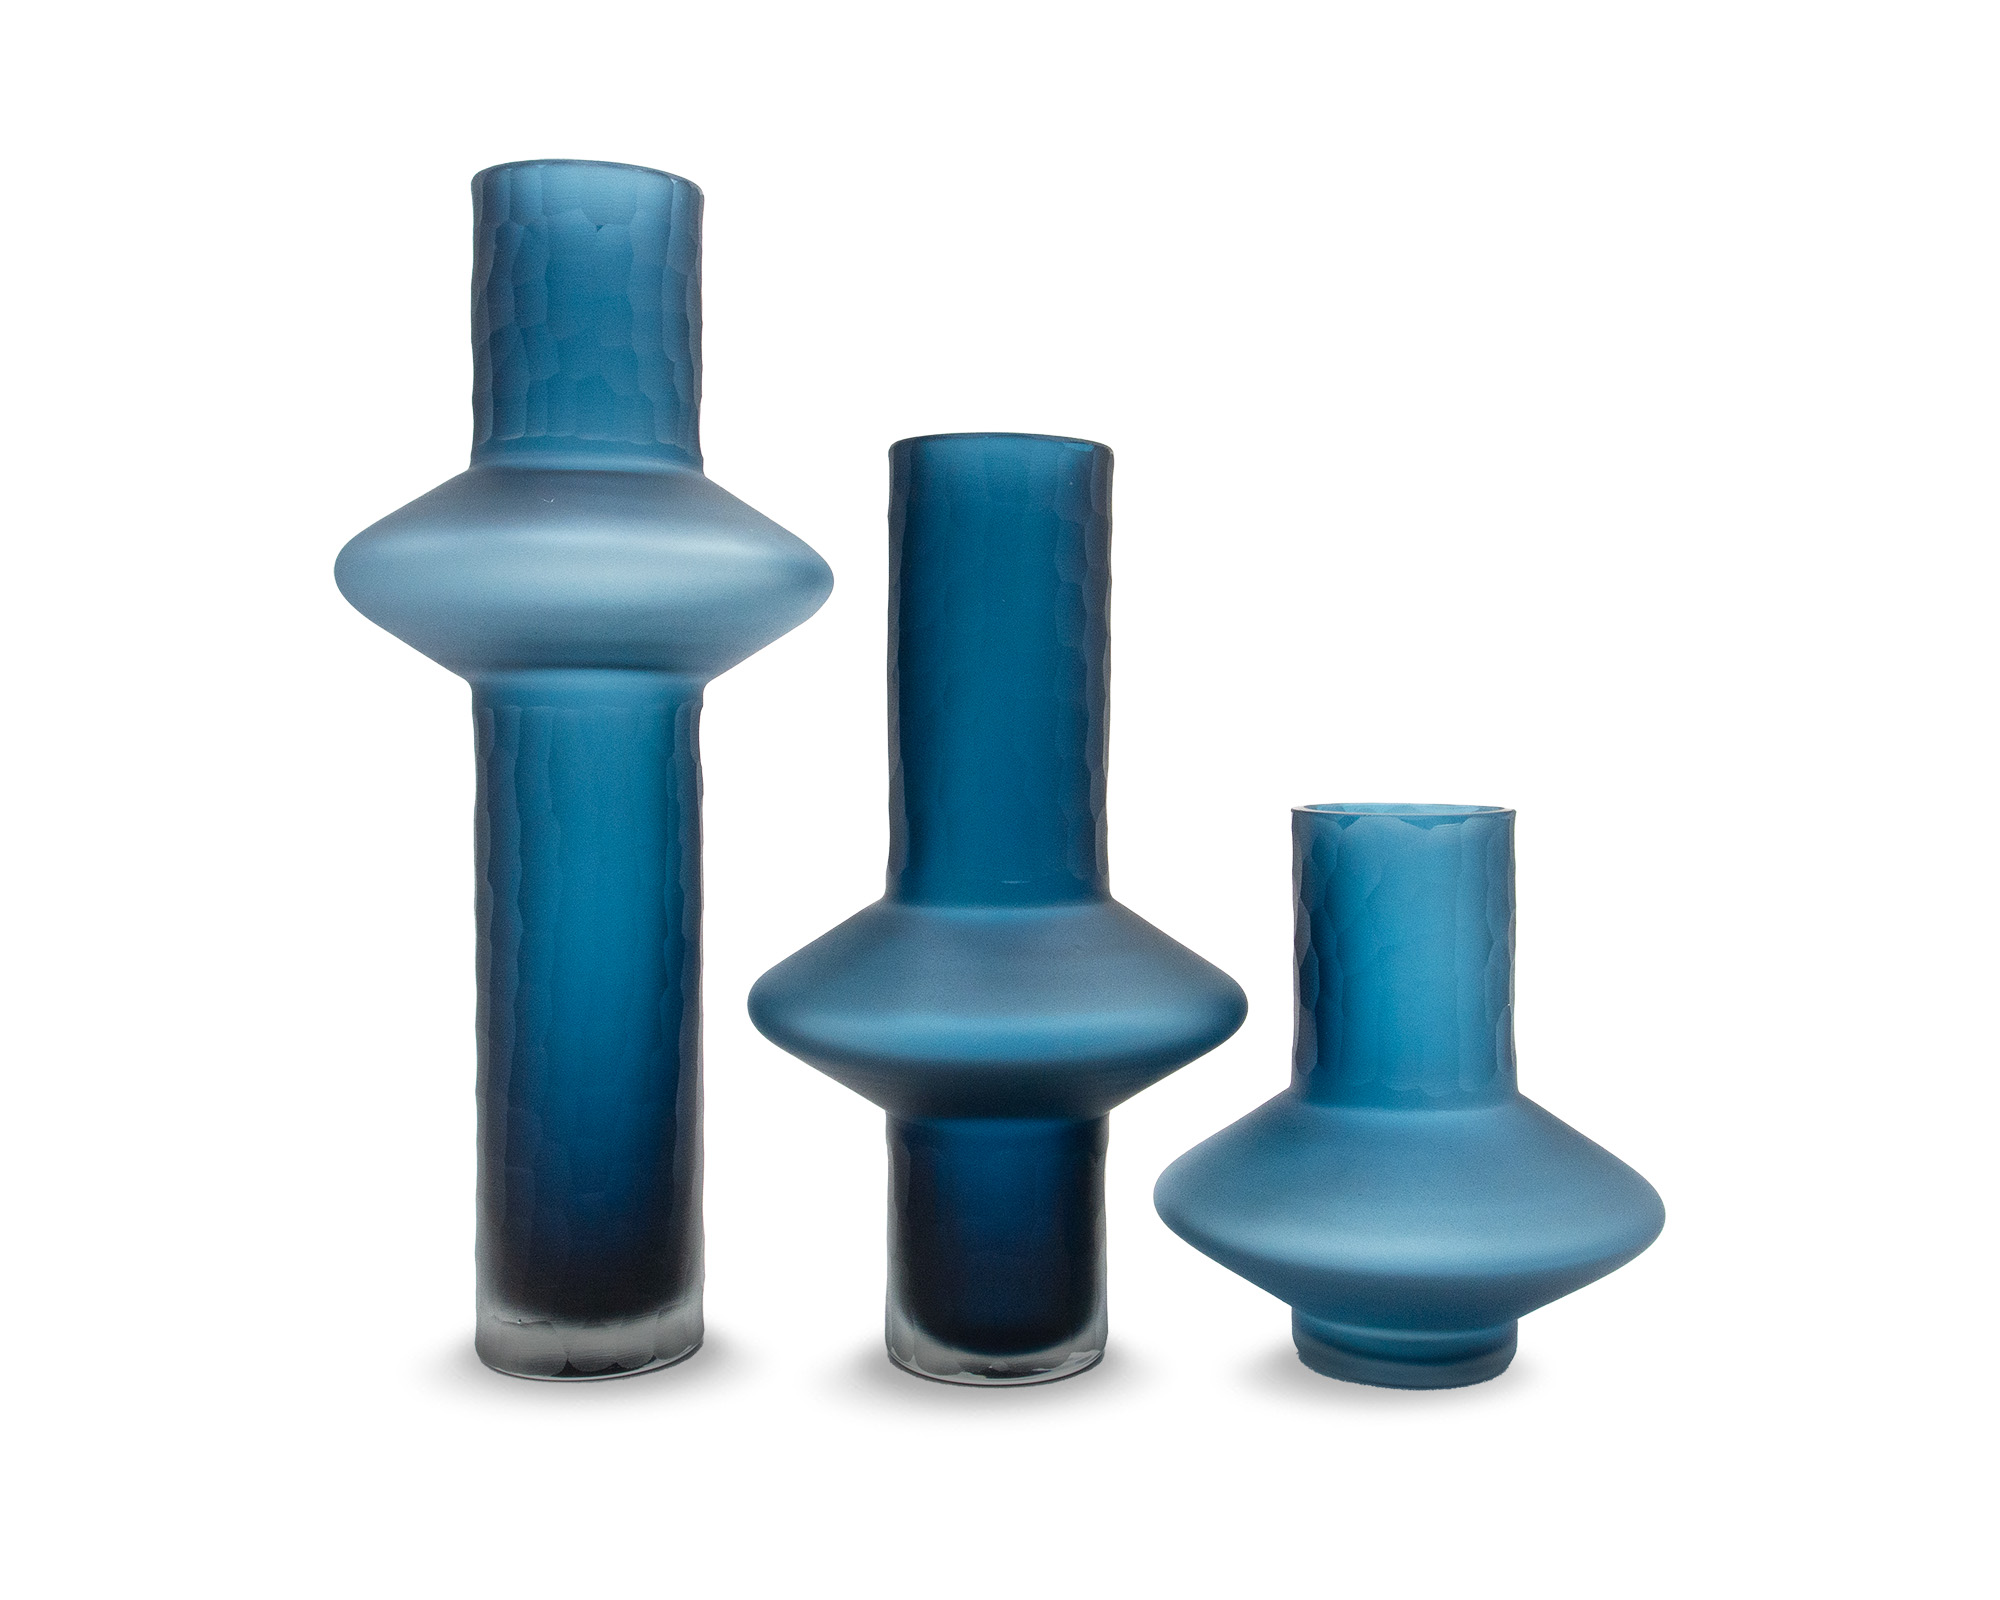 LE019-VS-044_LE019-VS-043_LE019-VS-042_L&E_Rei Glass Blue Vase_Small_Medium_Large_2000 x 1600_1